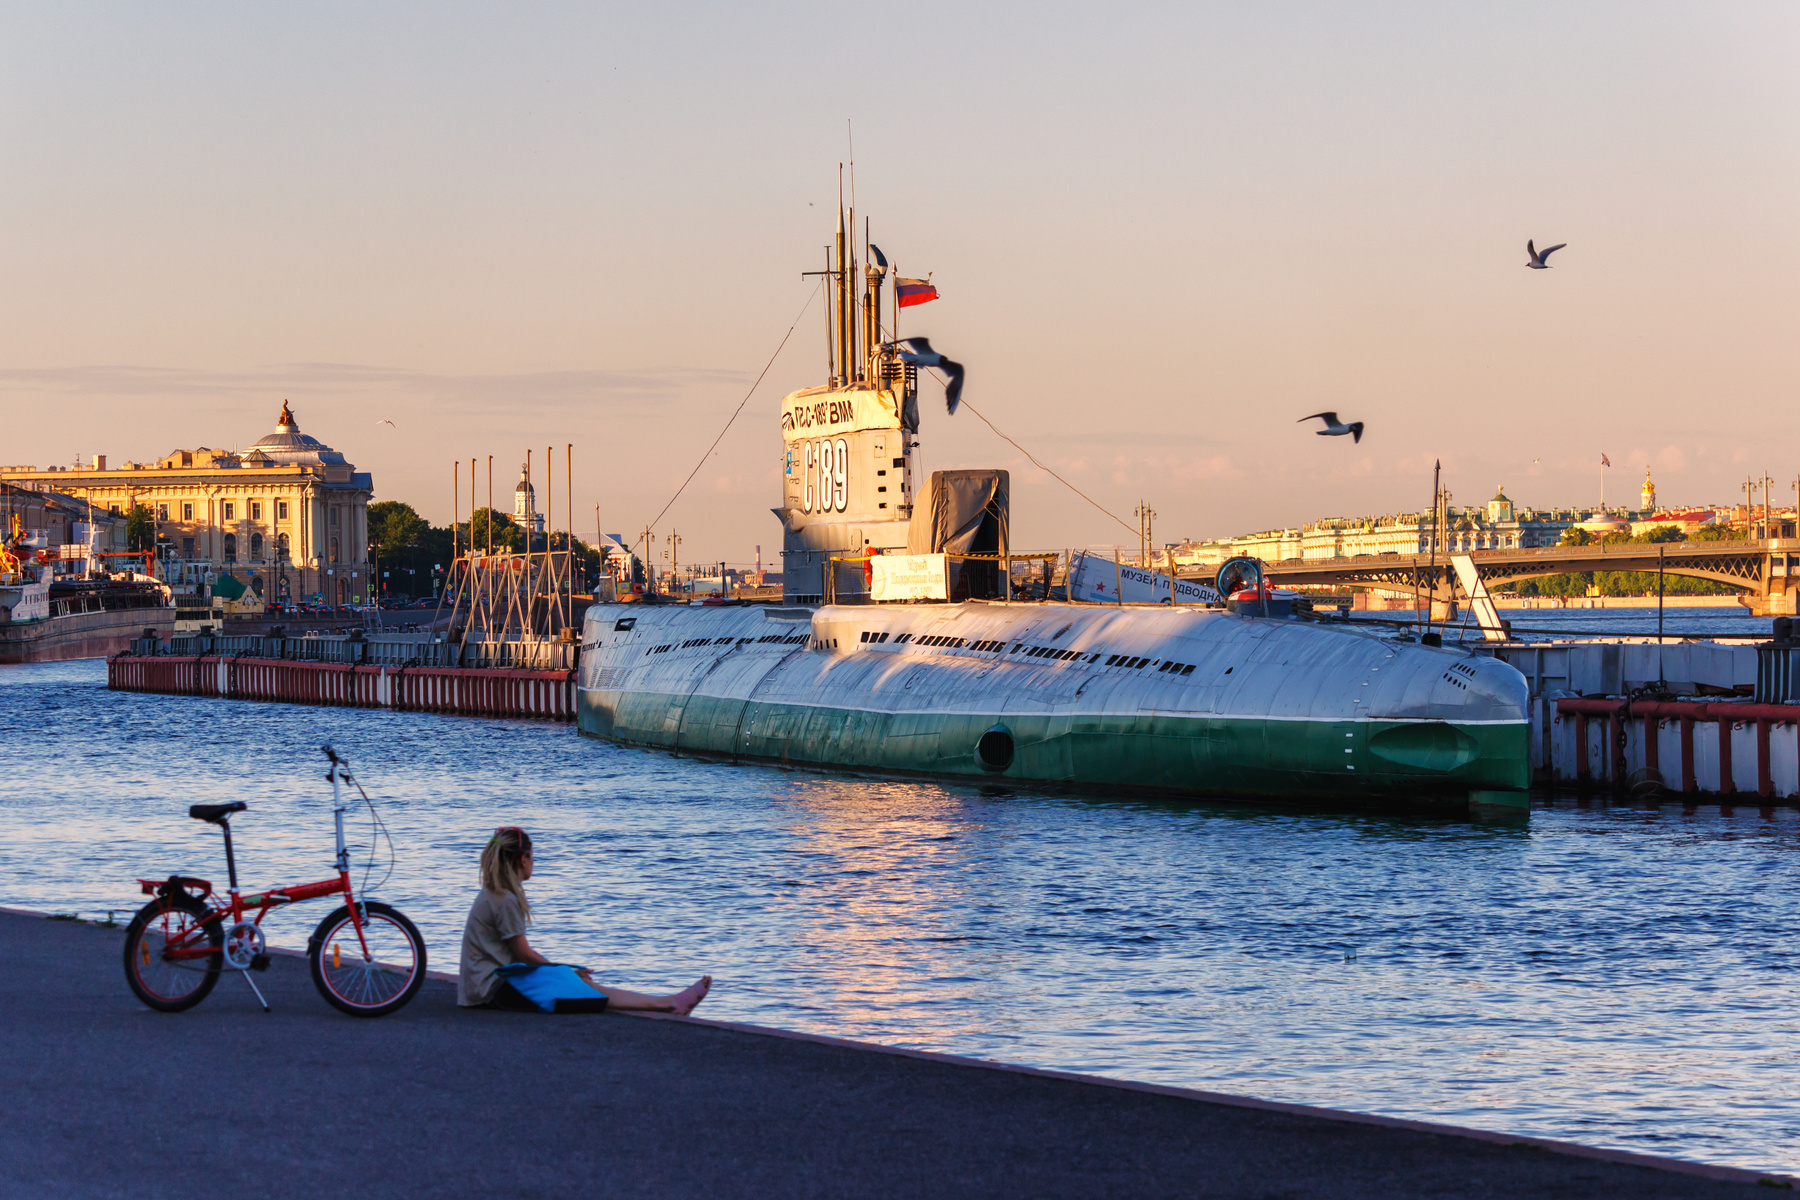 Лето, велосипед и подводная лодка Санкт-Петербург вечер река подводная лодка девушка велосипед